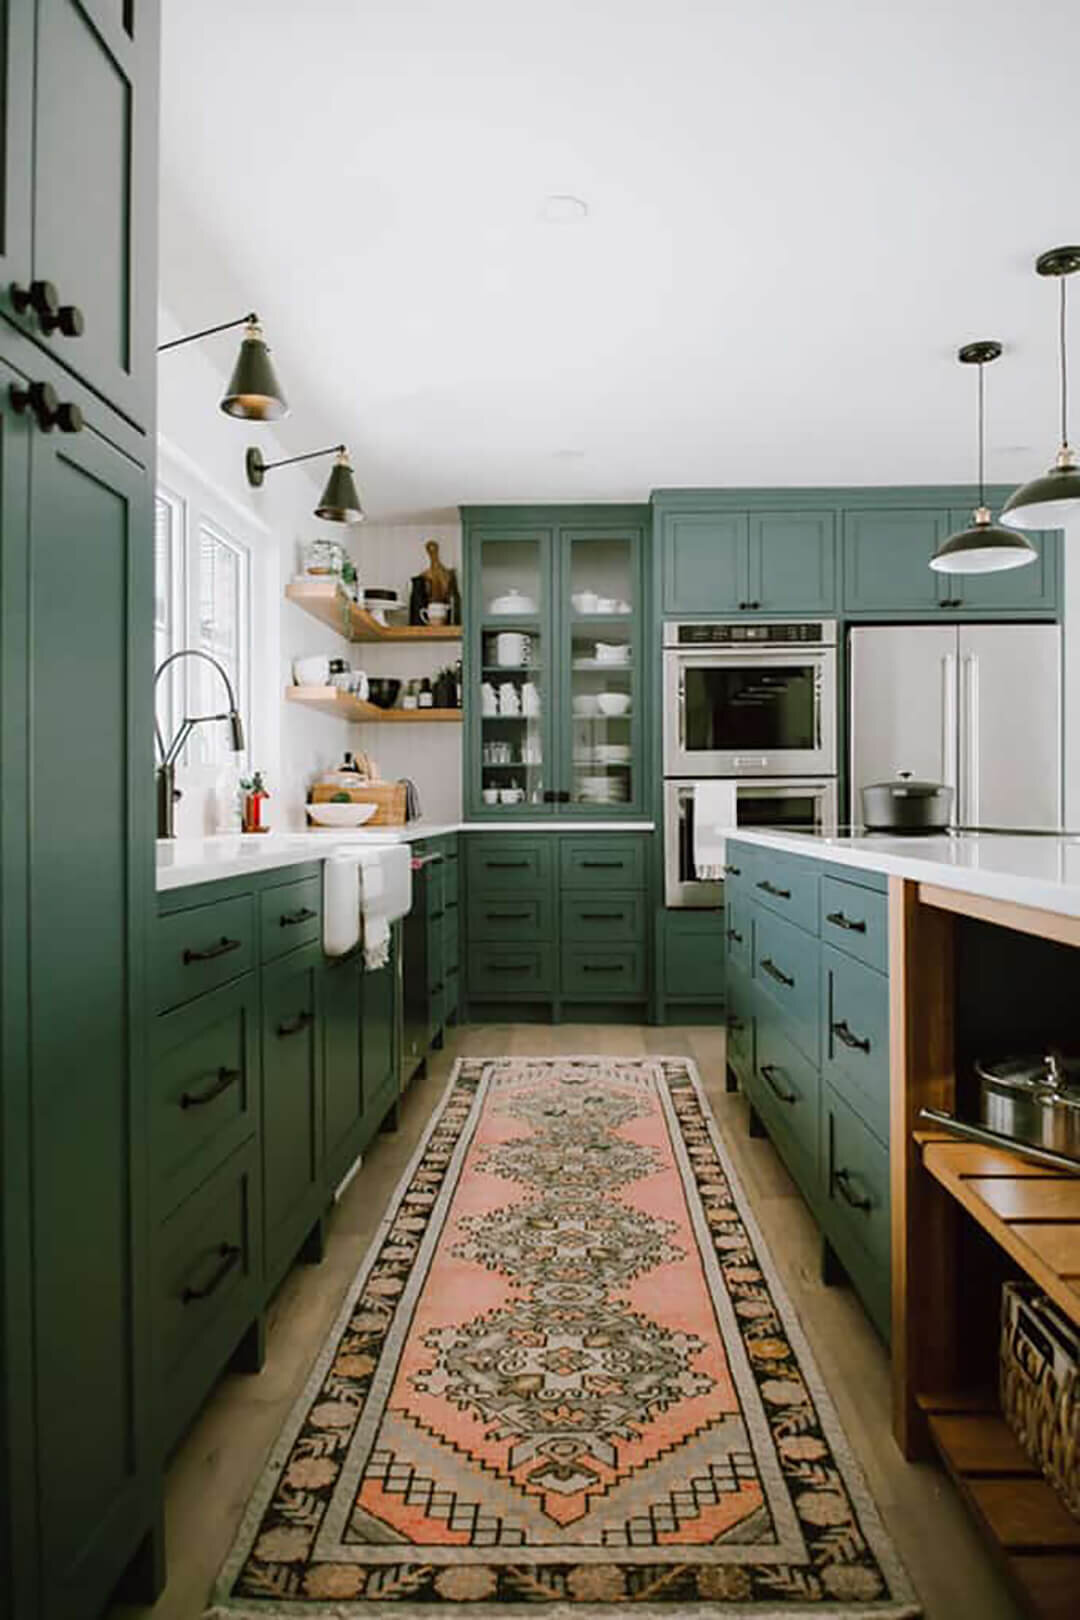 绿色厨房橱柜4 -贾克琳彼得斯设计。jpg